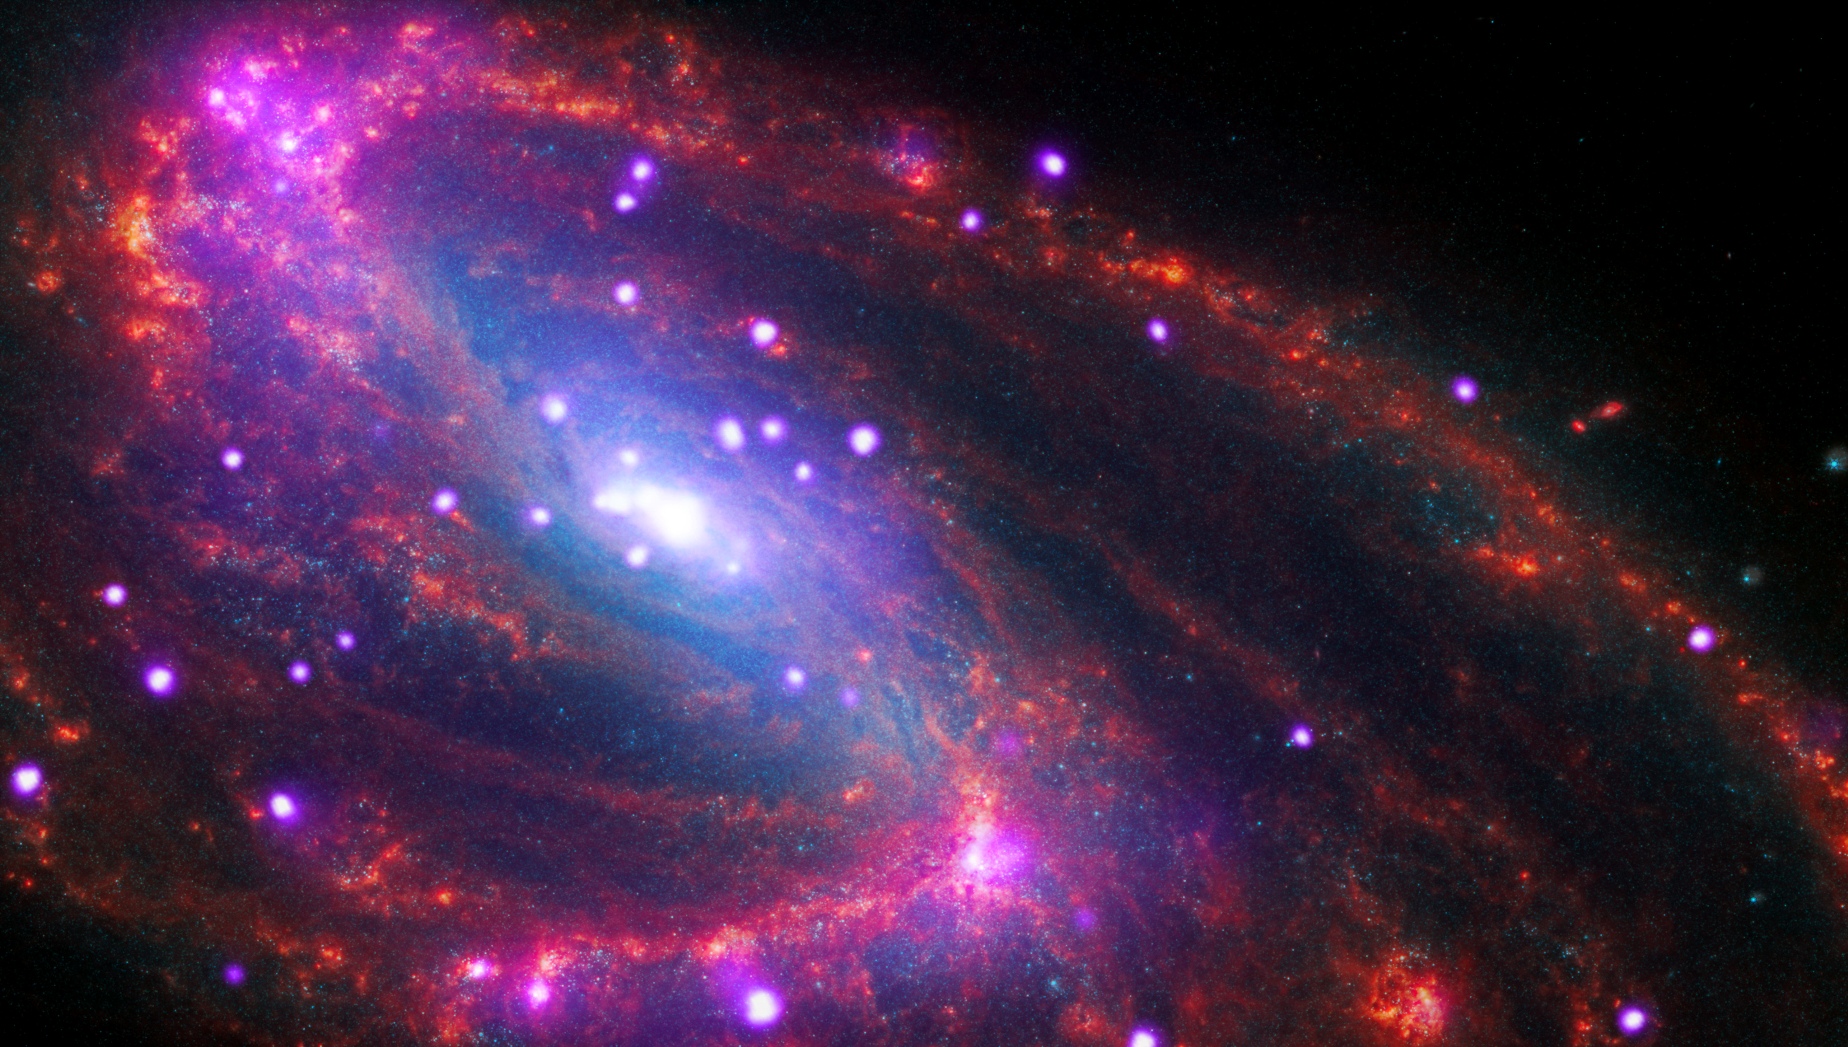 Seulement à quelque 36 millions d’années-lumière de la Voie lactée, NGC 3627 est une galaxie spirale que l’on voit sous un léger angle. NGC 3627 est connue comme une galaxie spirale « barrée » en raison de la forme rectangulaire de sa région centrale. De notre point d’observation, nous pouvons également voir deux bras spiraux distincts qui apparaissent sous forme d’arcs. Les rayons X de Chandra en violet montrent la présence d'un trou noir supermassif en son centre ainsi que d'autres objets denses comme des étoiles à neutrons et des trous noirs attirant la matière. Pendant ce temps, Webb révèle en infrarouge (infrared en anglais) la poussière, le gaz et les étoiles dans toute la galaxie en rouge, vert et bleu. Cette image contient également des données dans le visible (optical en anglais) du télescope spatial Hubble de la Nasa en rouge, vert et bleu. © X-ray: NASA/CXC/SAO; Optical: NASA/ESO/STScI, ESO/WFI; Infrared: NASA/ESA/CSA/STScI/JWST; Image Processing: NASA/CXC/SAO/J. Major